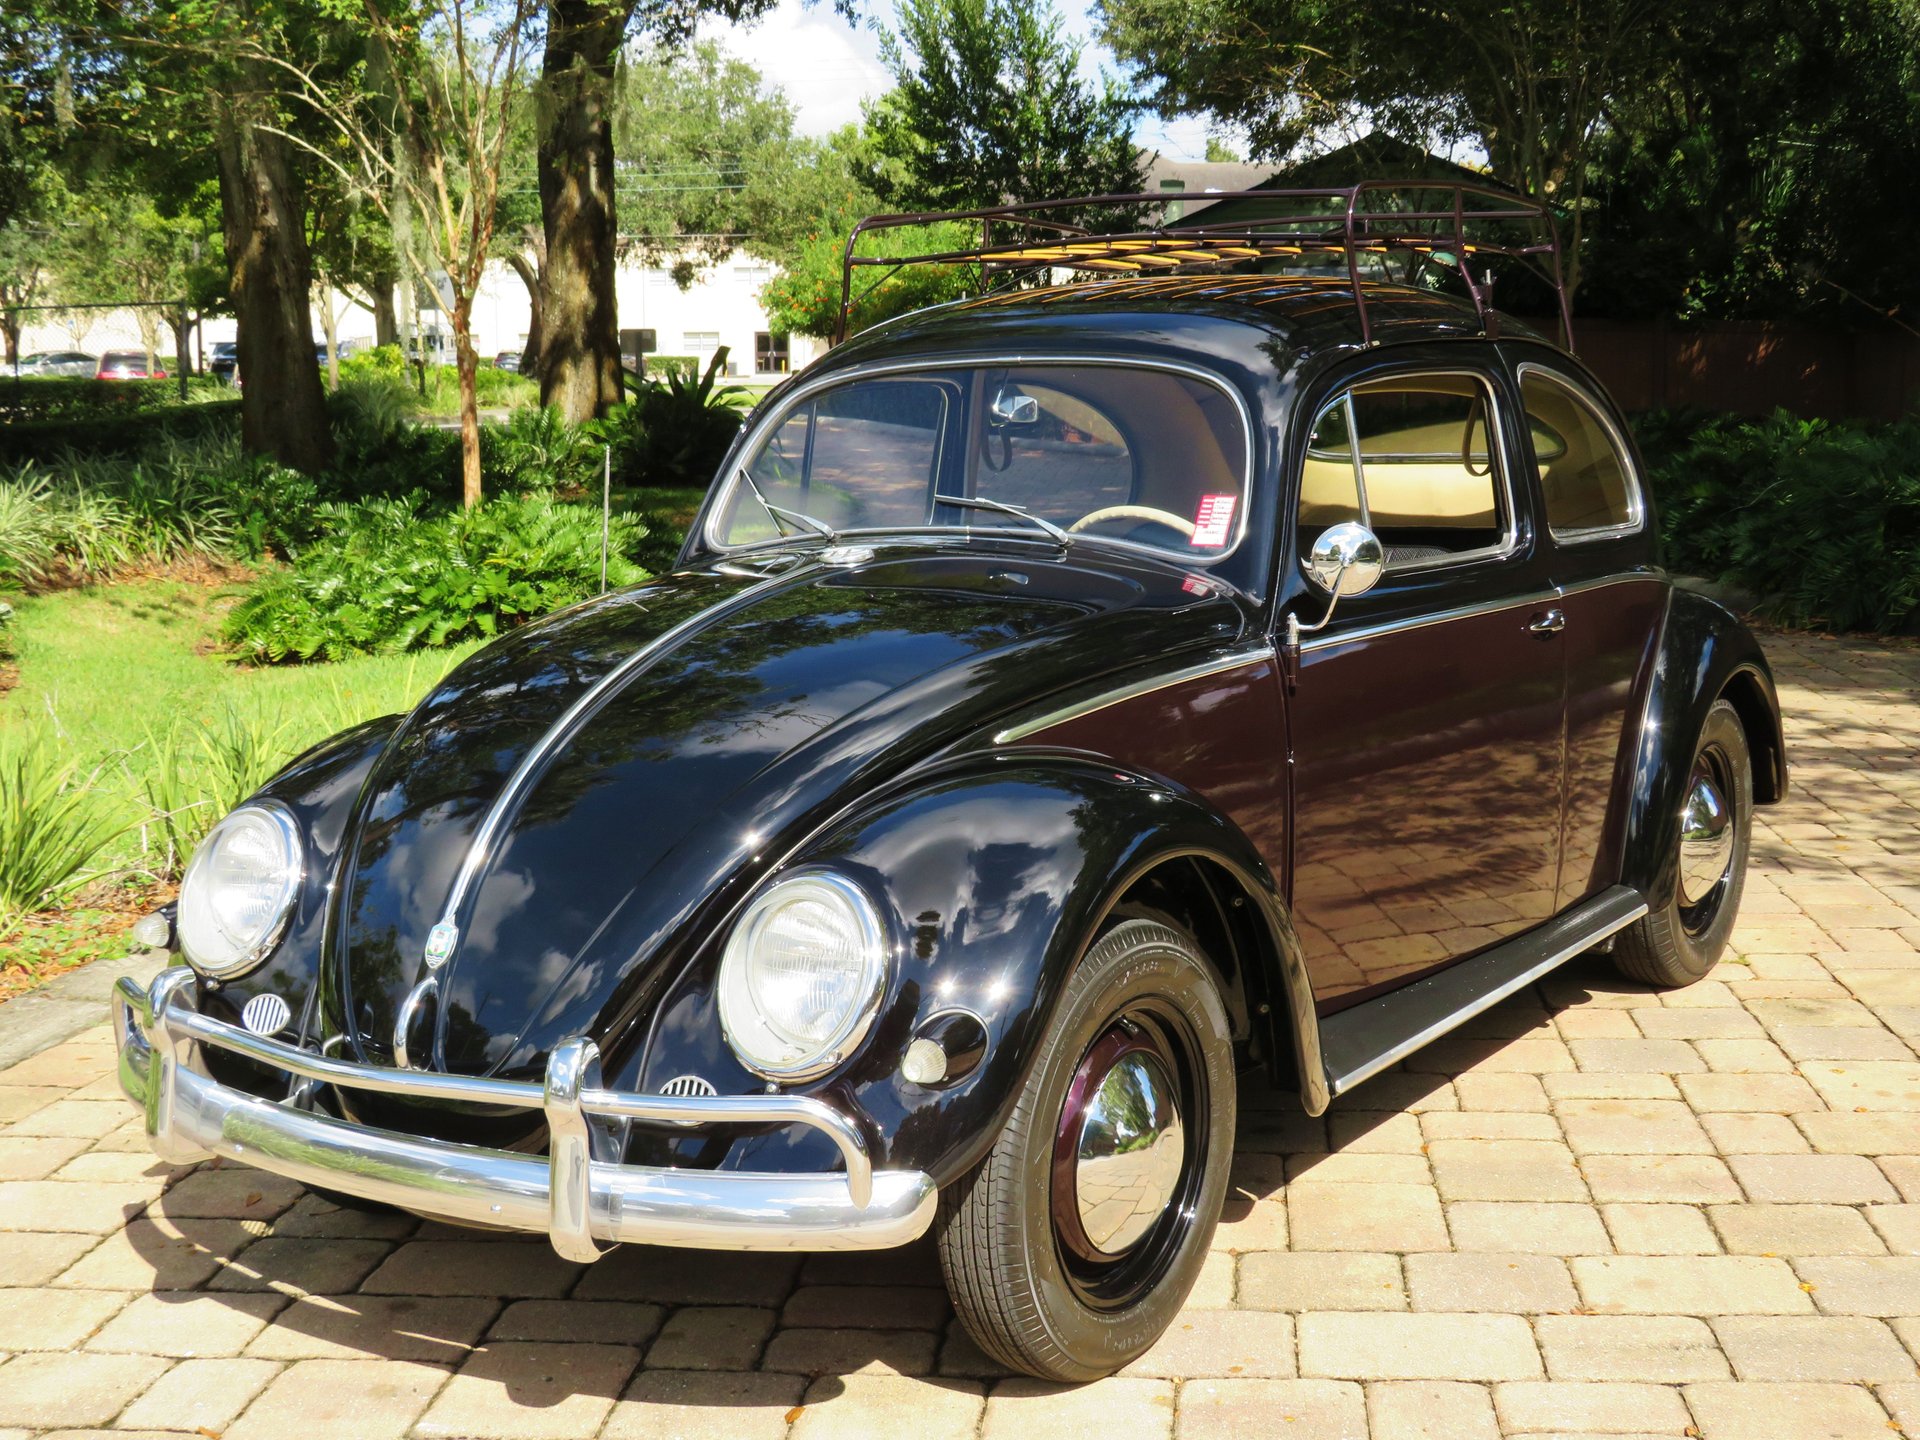 1956 volkswagen beetle